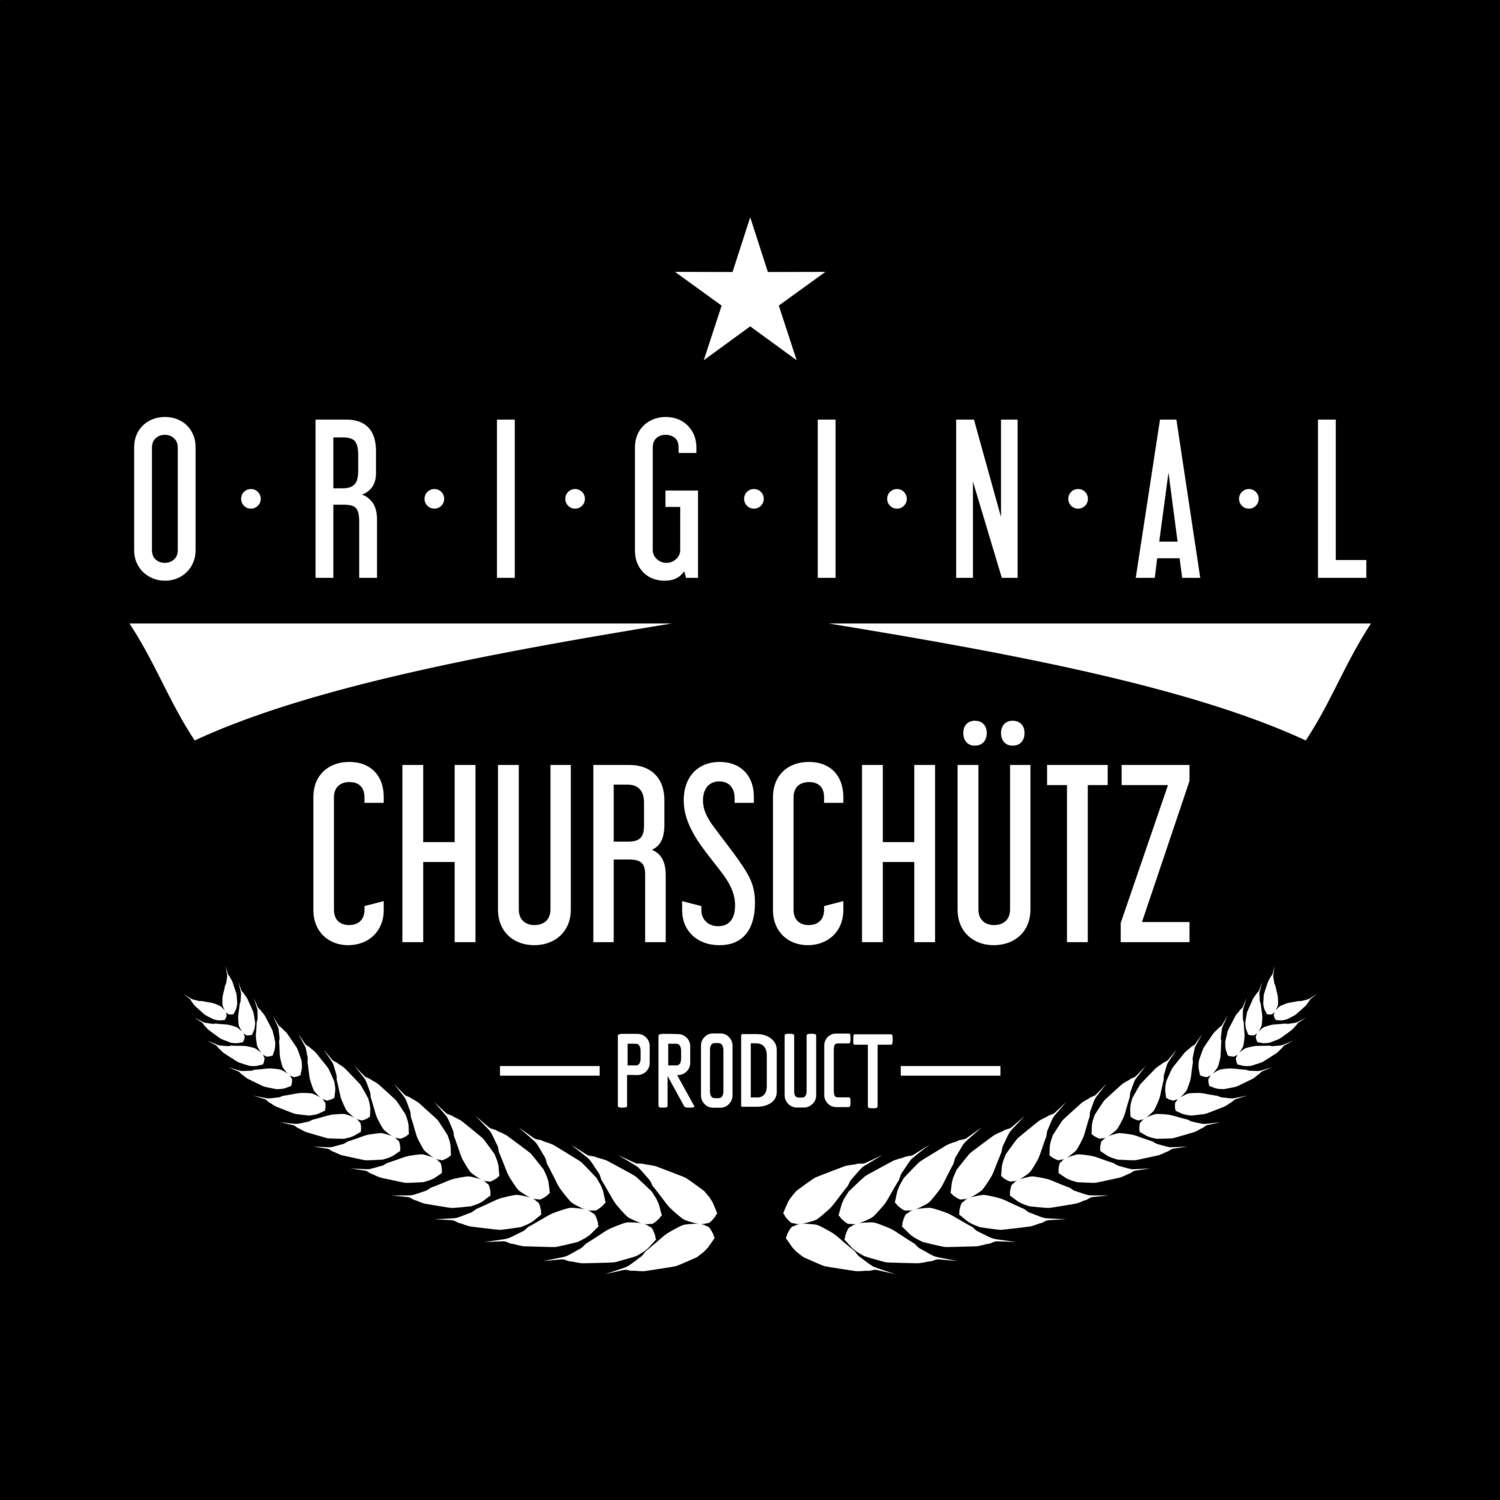 Churschütz T-Shirt »Original Product«